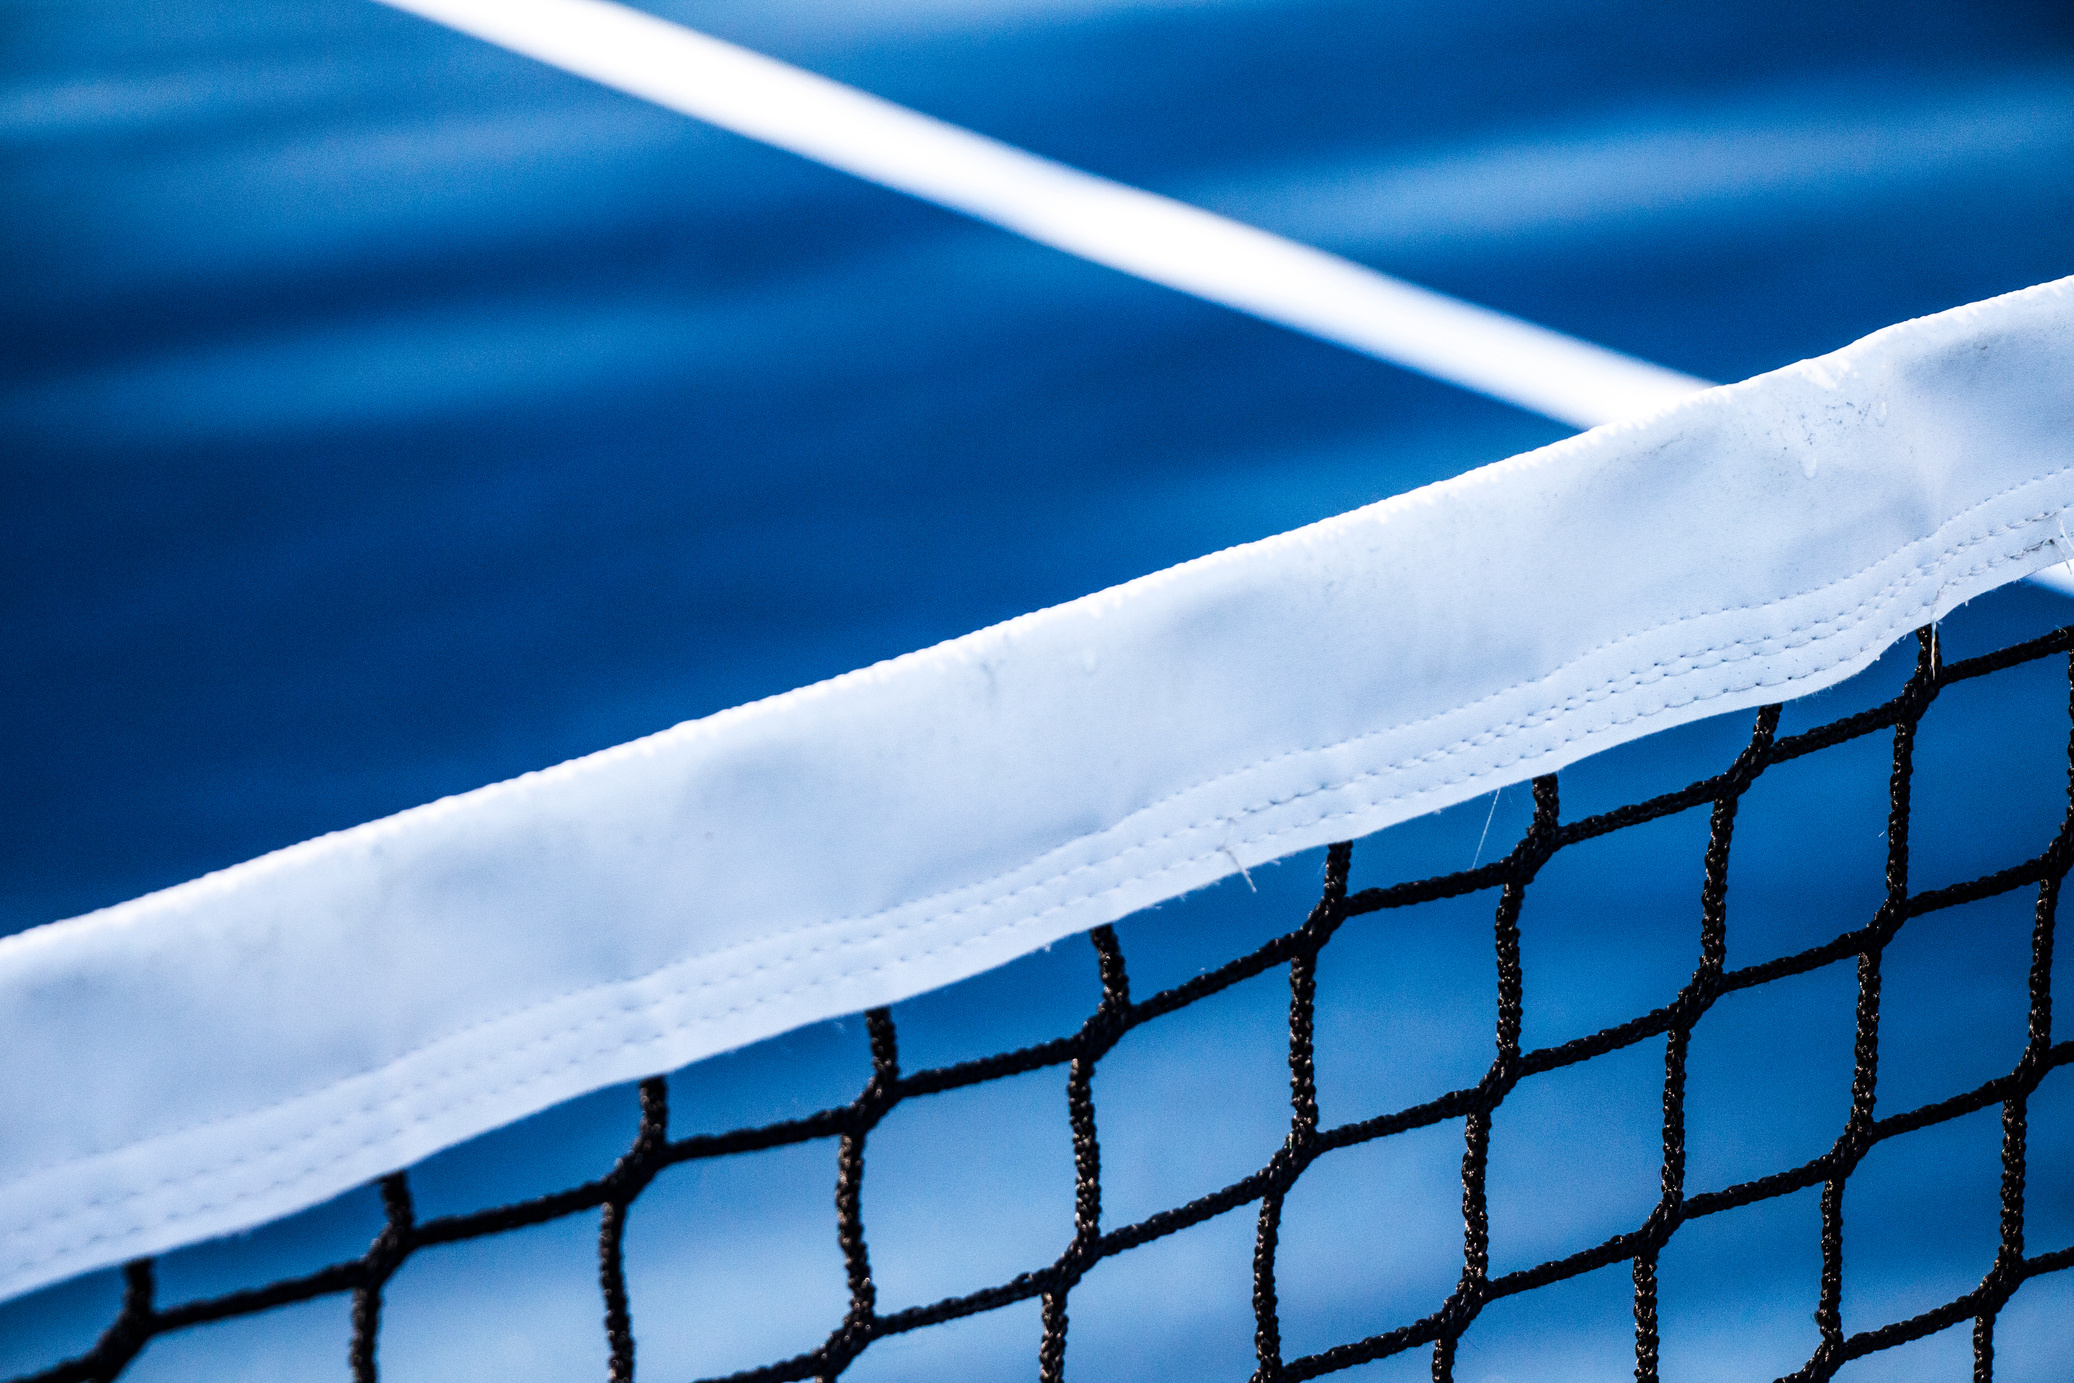 Close-Up Shot of a Tennis Net